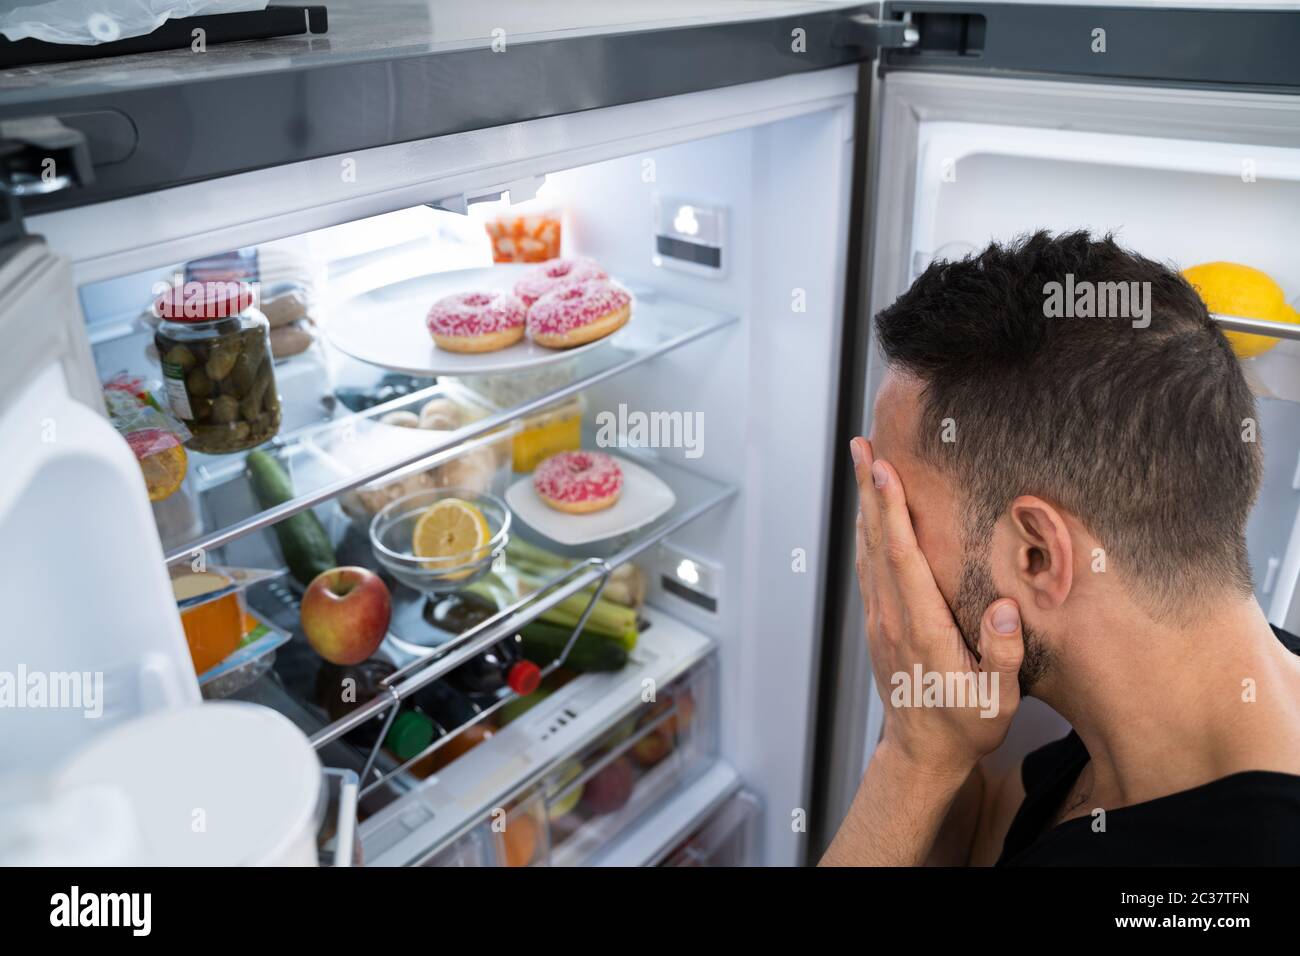 Mauvaise odeur de poussette de Rotten dans le réfrigérateur ou le réfrigérateur Banque D'Images